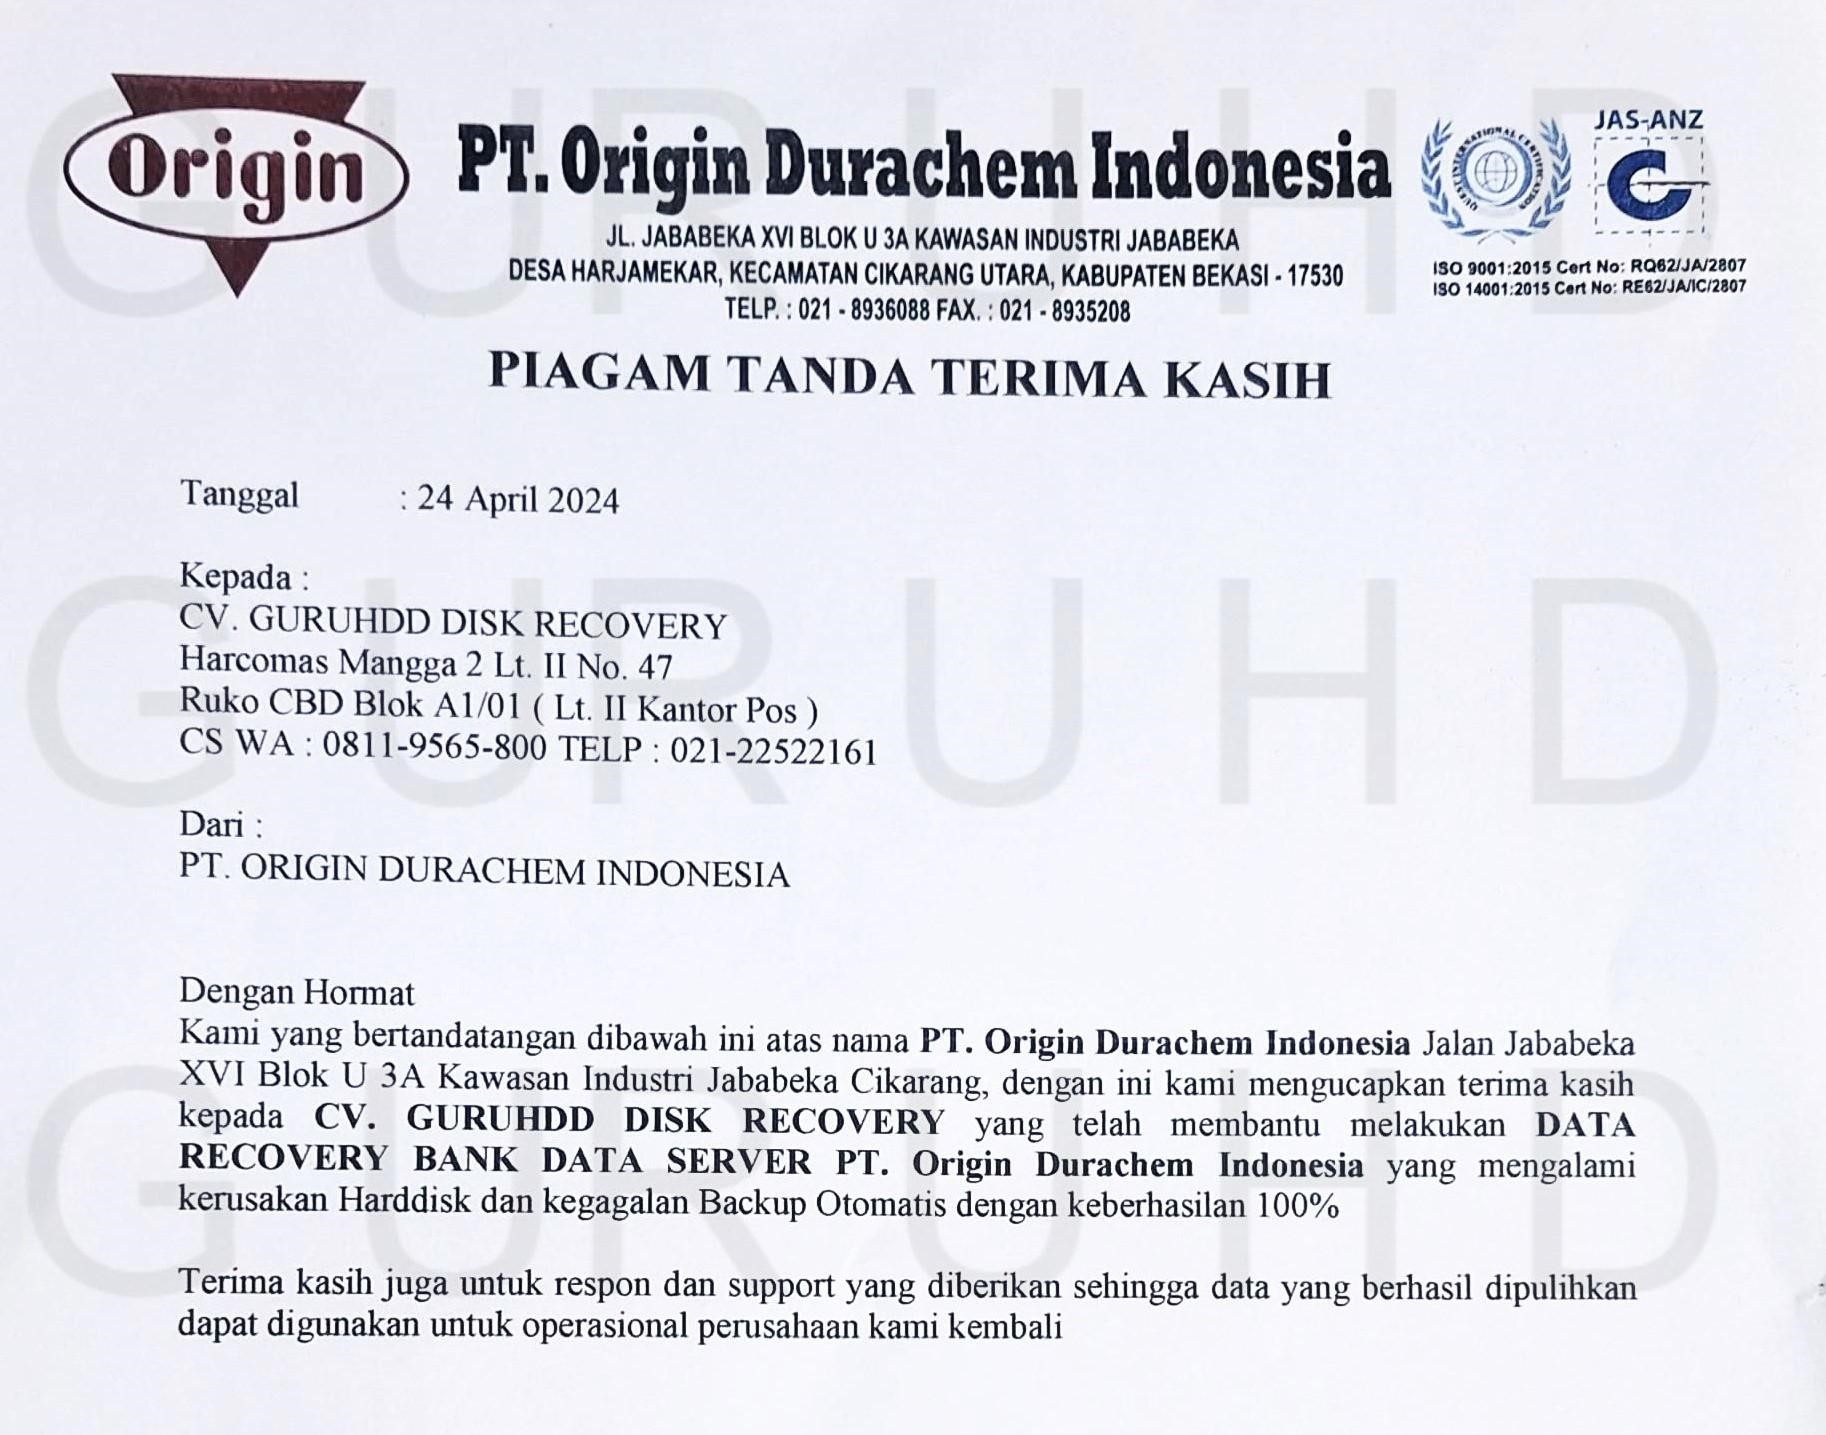 PT Origin Durachem Indonesia